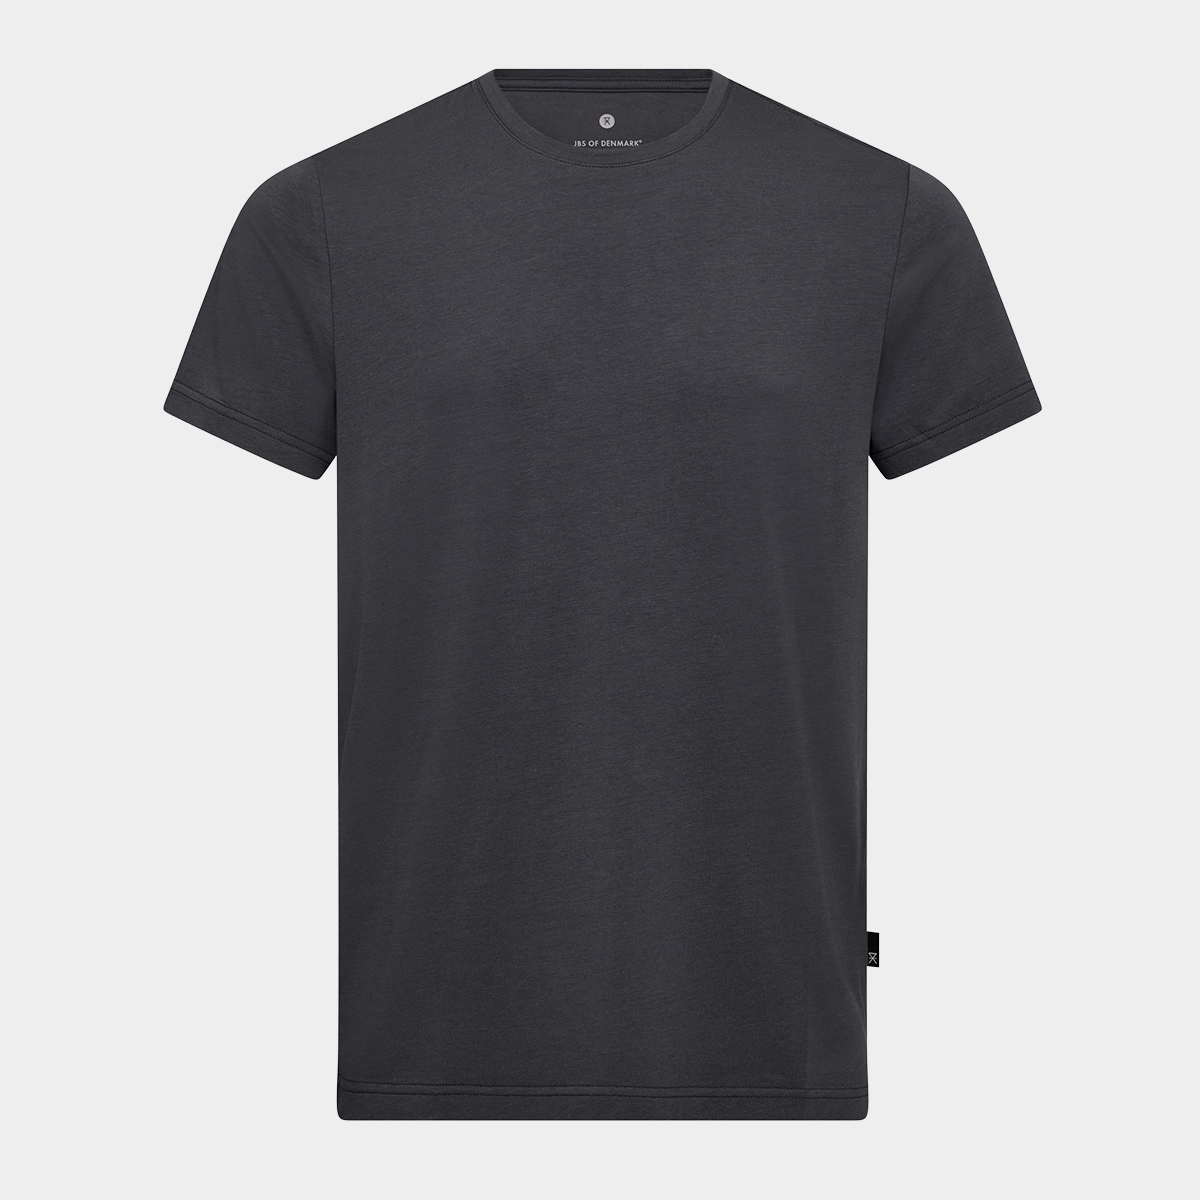 Mørkegrå bambus t-shirt fra JBS of Denmark, XL